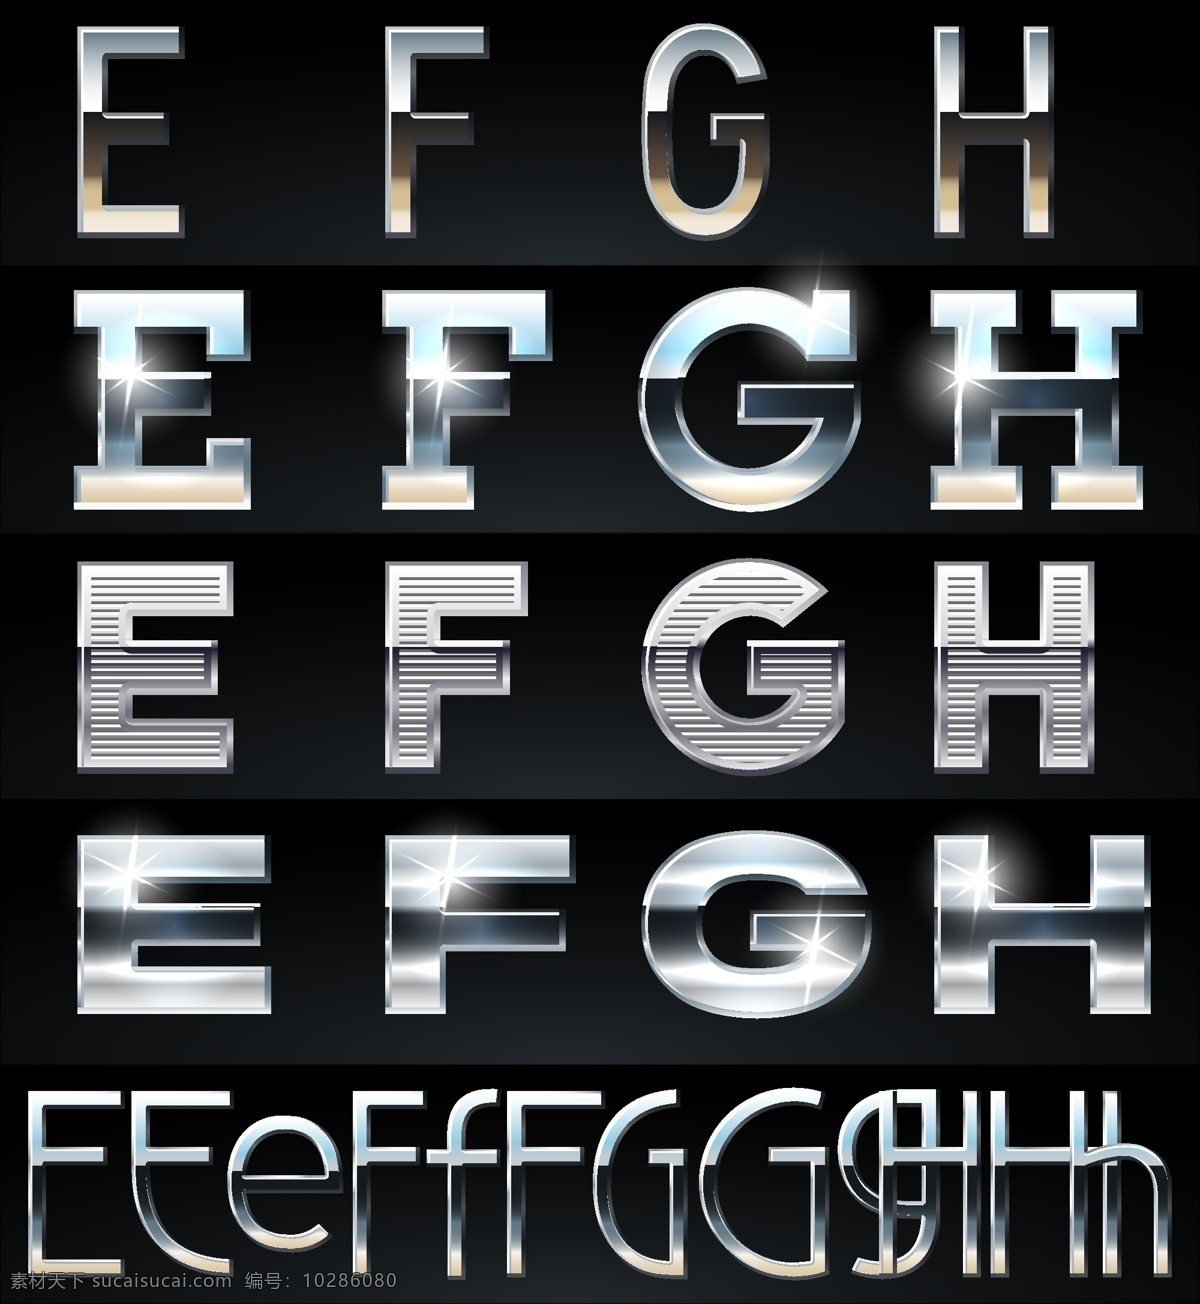 字体设计 抽象 图形 创意 艺术 设计素材 矢量 金属 质感 样式 字体 字母 英文 高光 流行元素 底纹边框 矢量素材 黑色